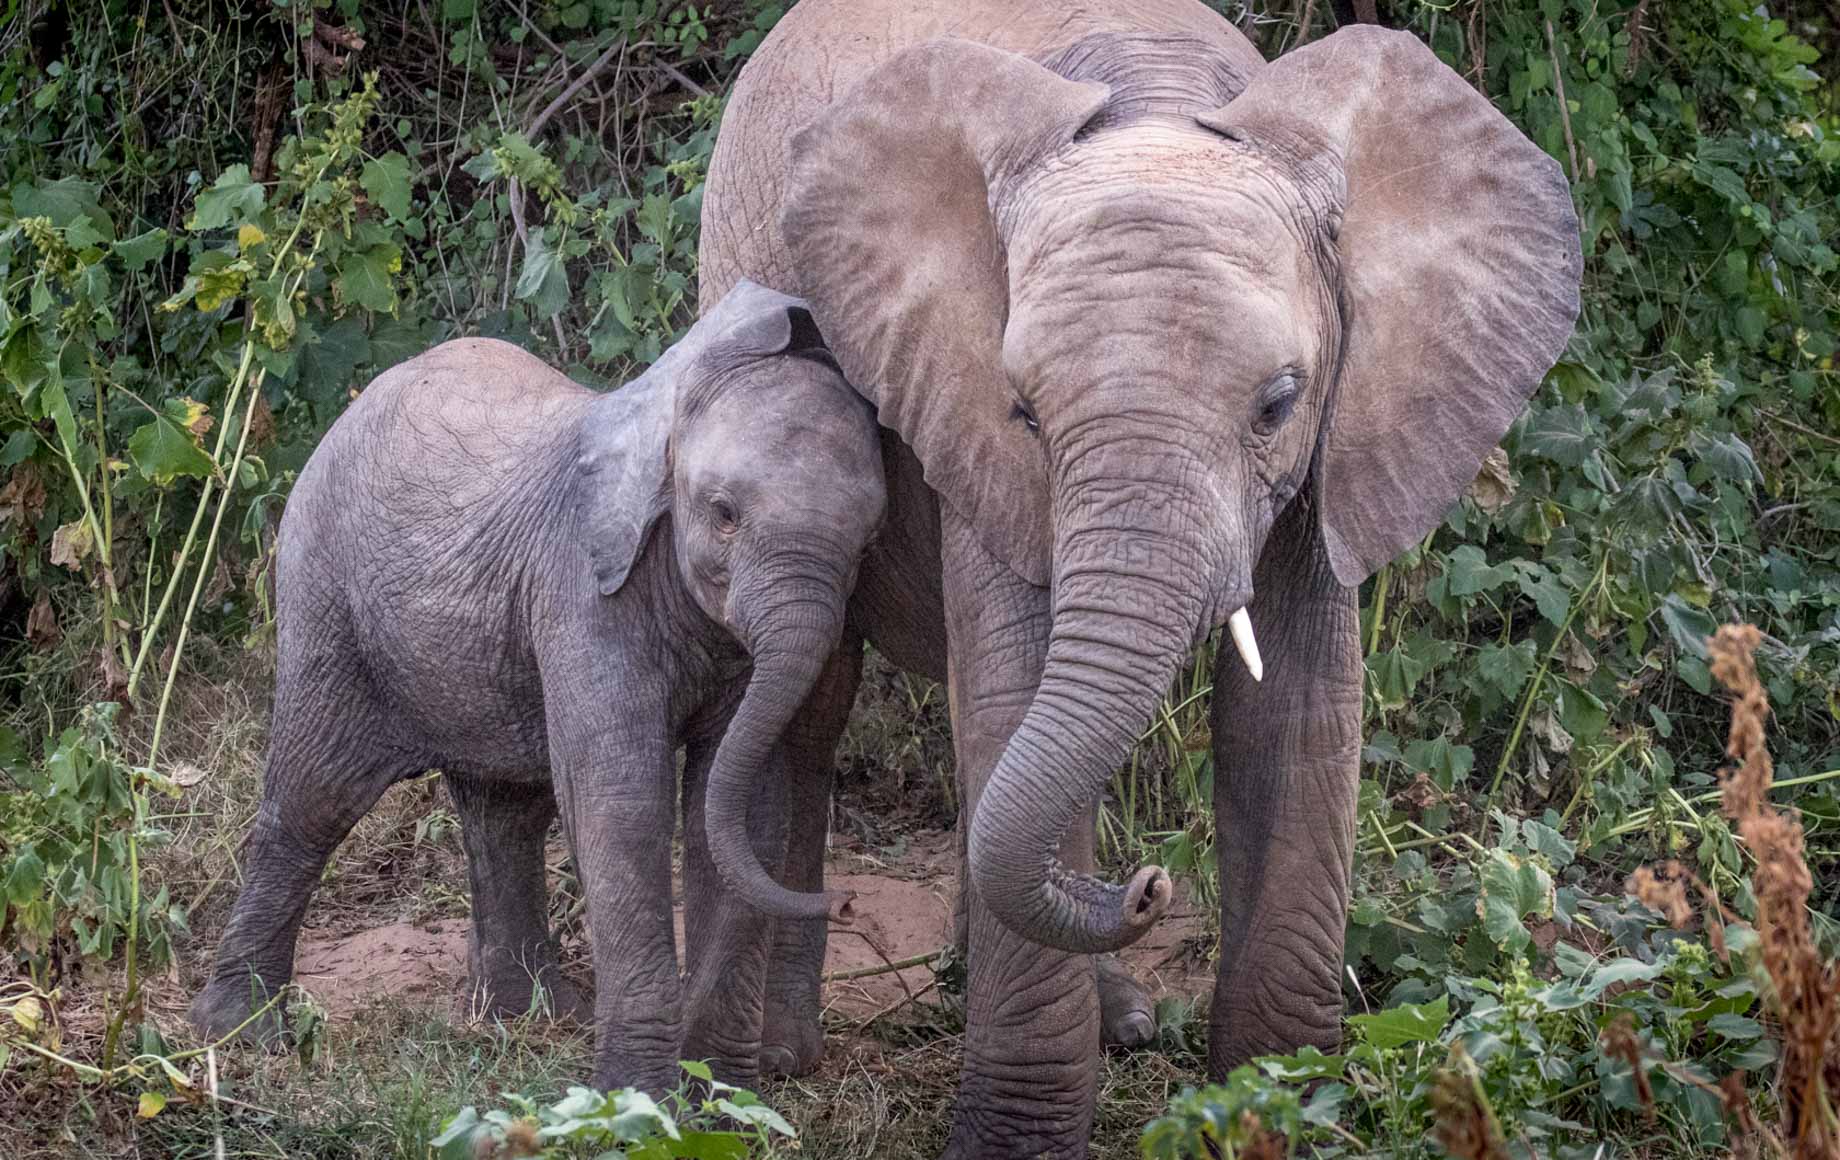 Baby elephant cuddling with older elephant at Samburu National Reserve